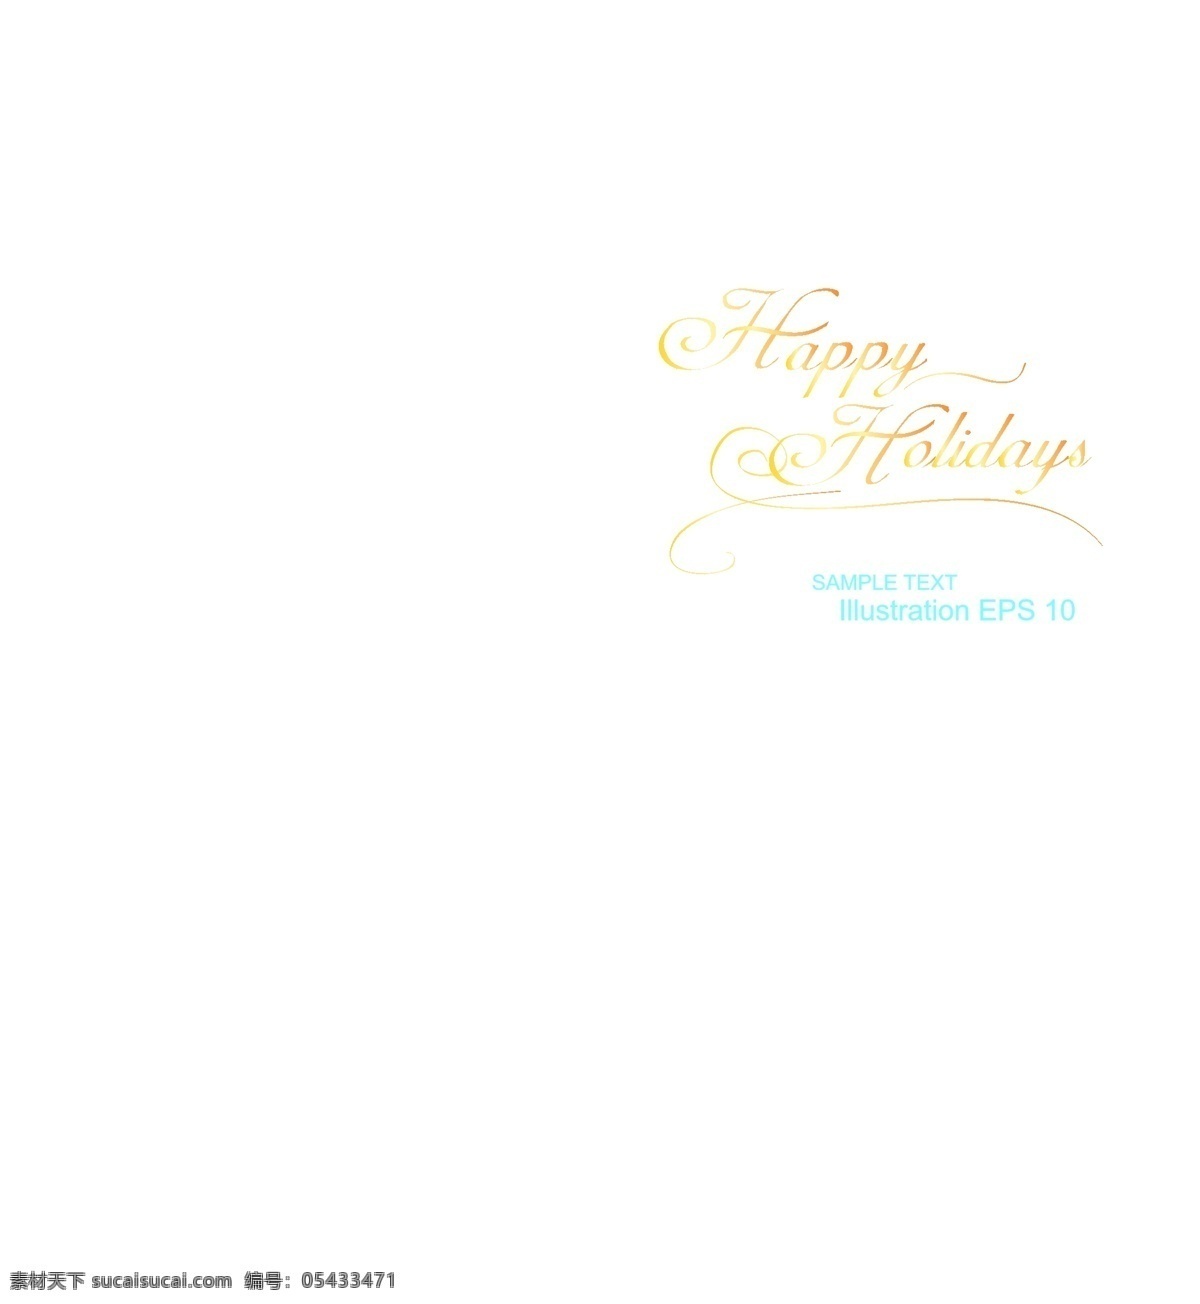 温馨 圣诞节 贺卡 eps素材 光斑 节日卡片 模板 设计稿 圣诞树 星光背景 节日大全 源文件 节日素材